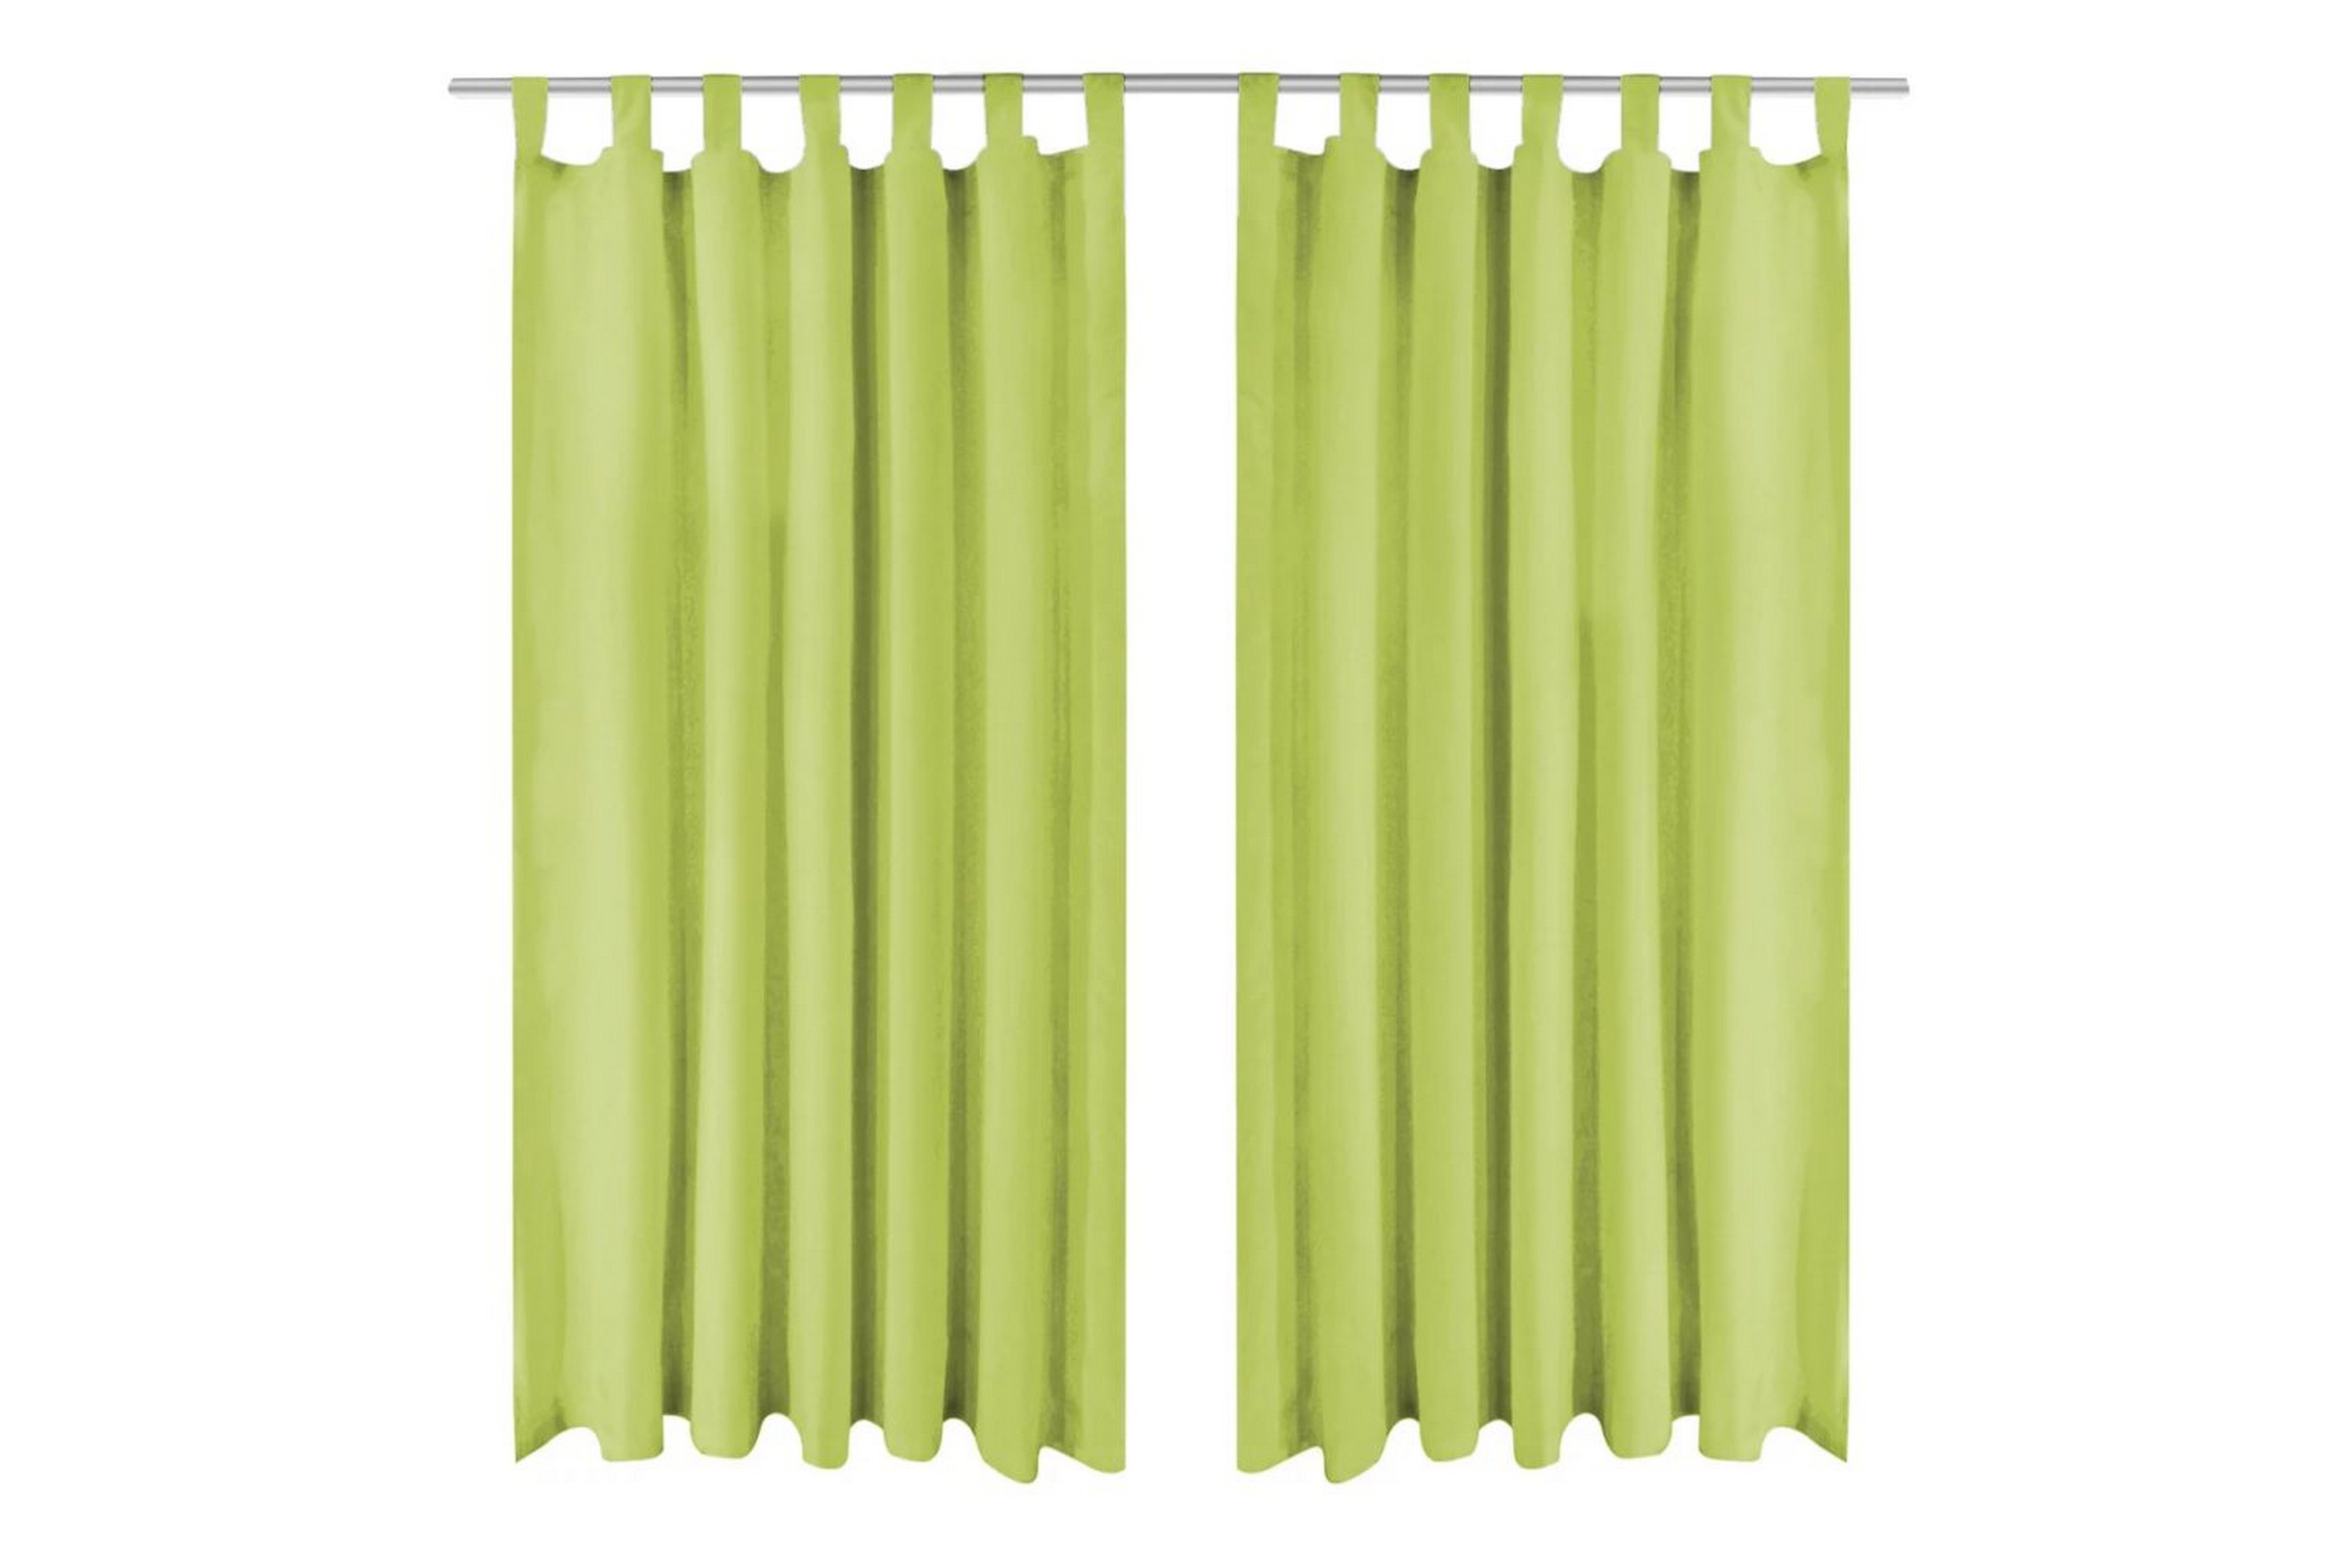 Be Basic Mikrosateng gardiner med hemper 2 stk 140x175 cm grønn - Grønn